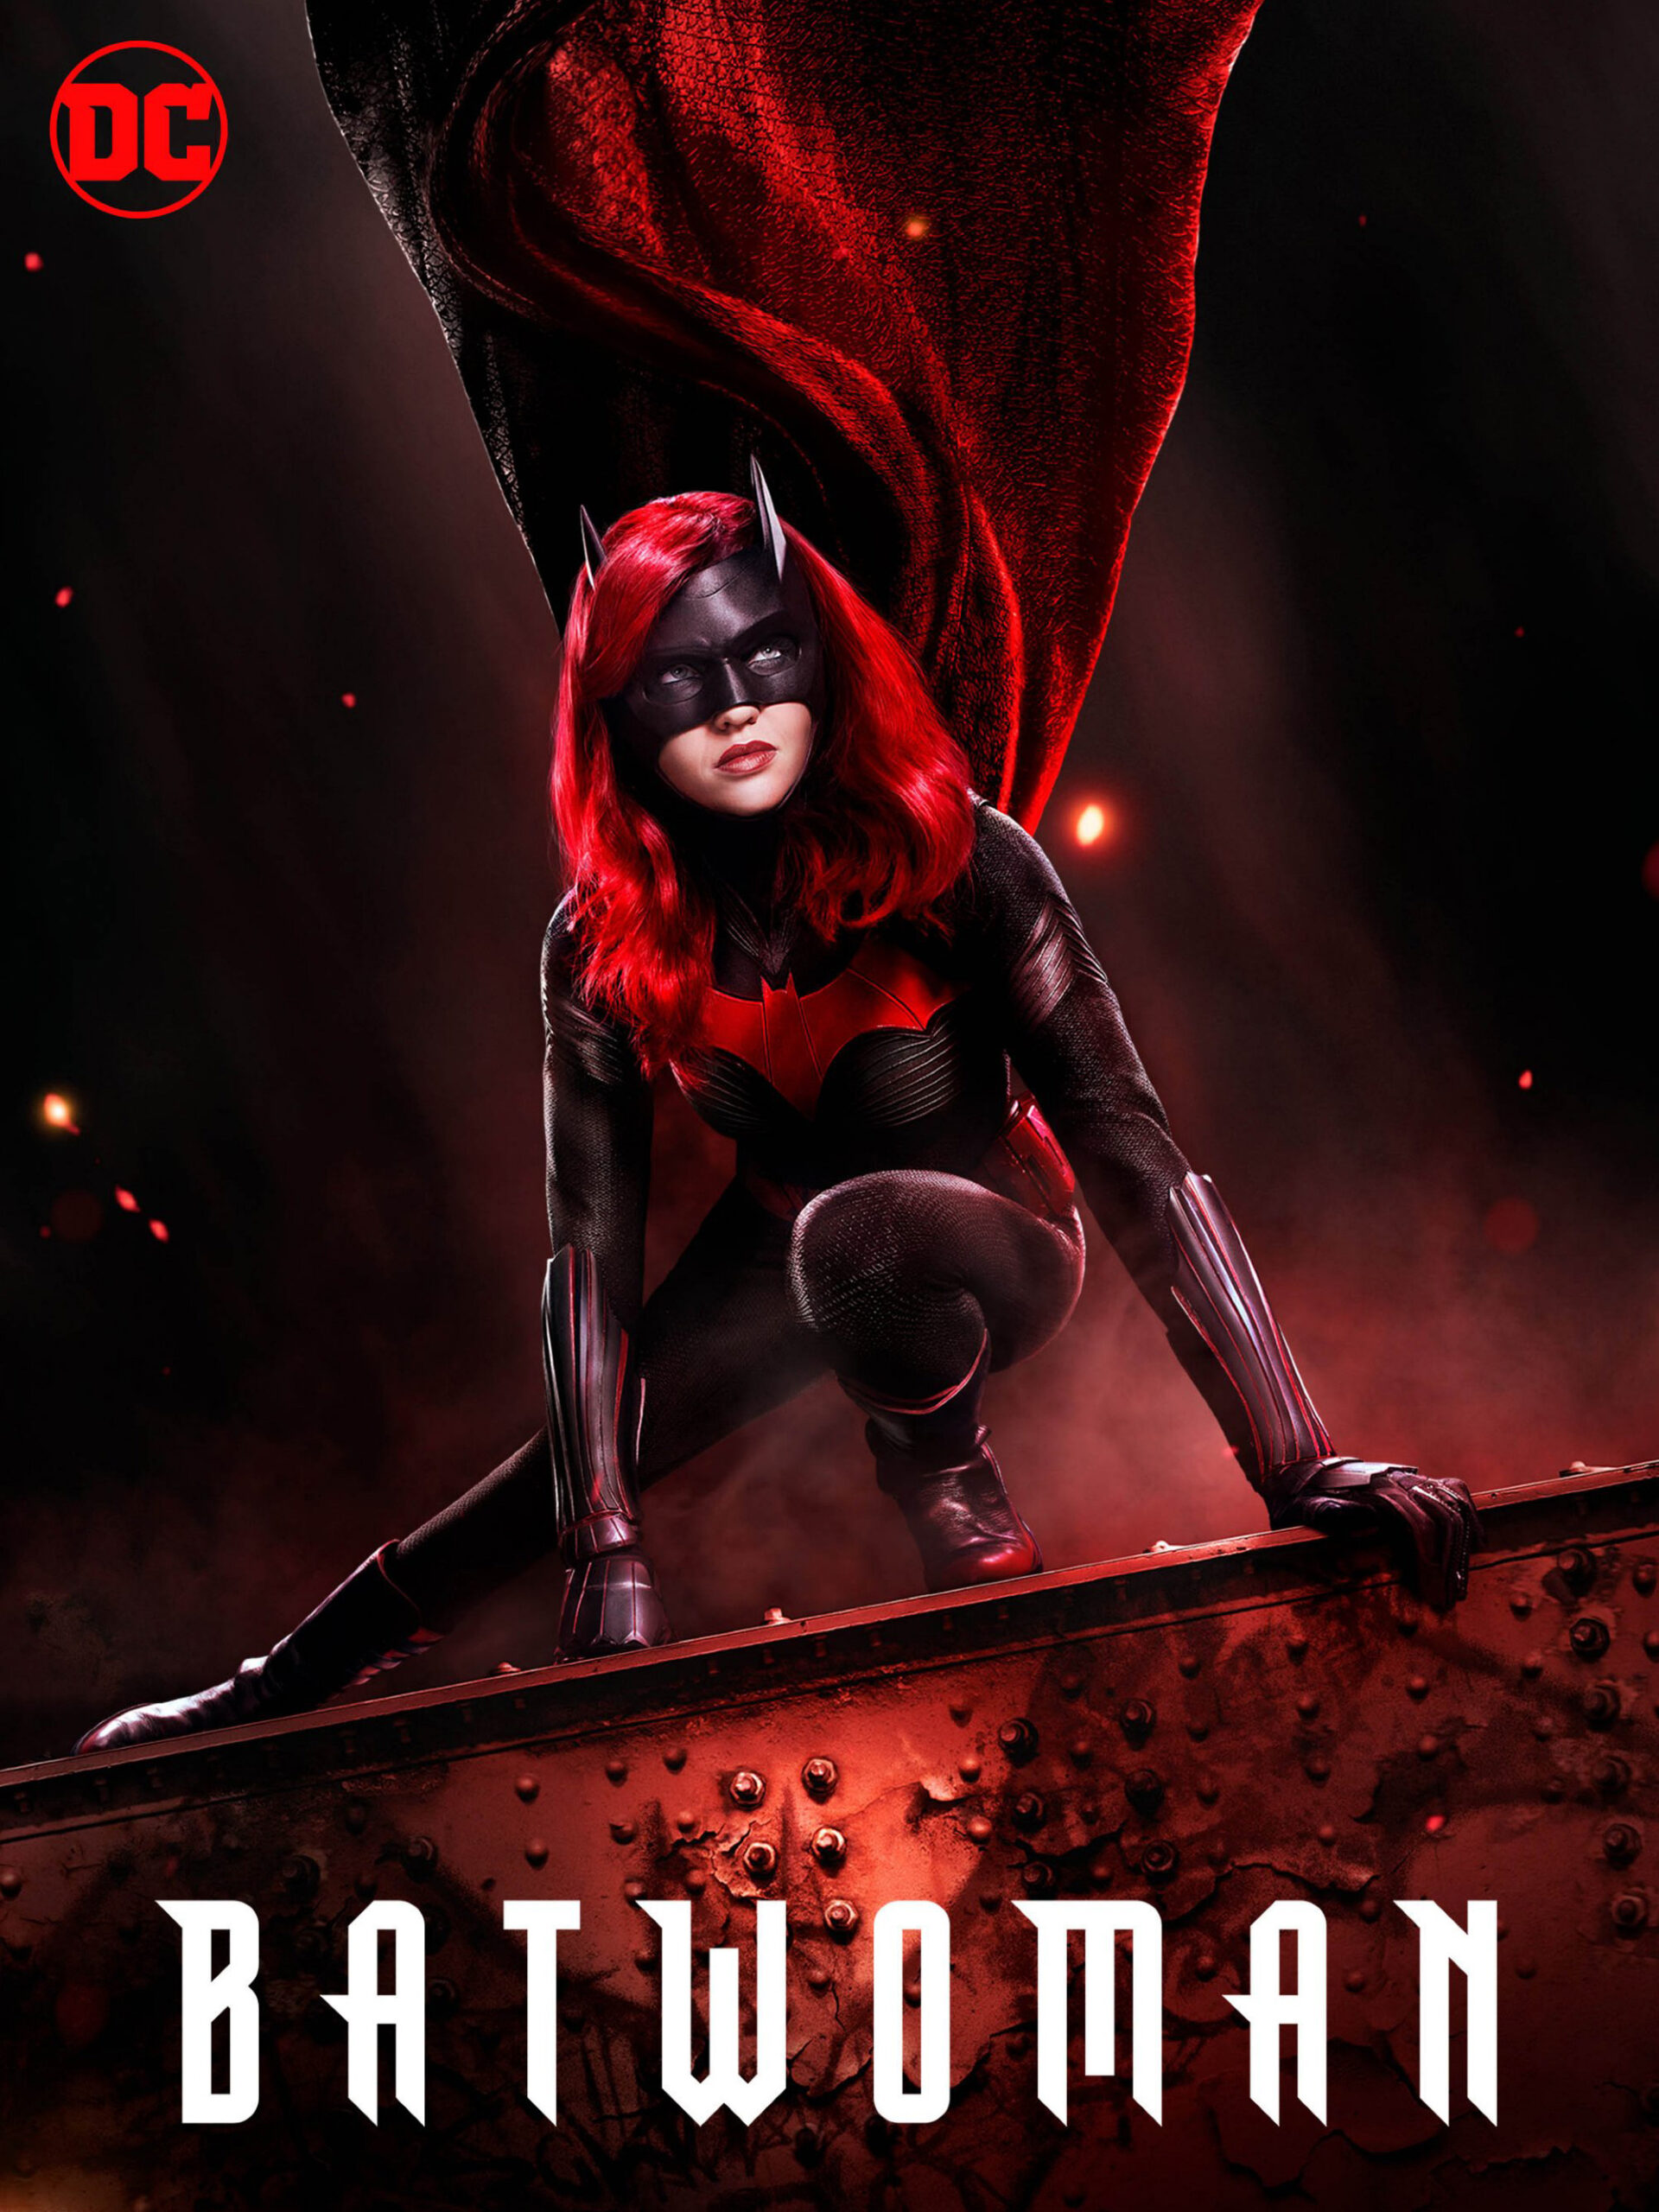 ดูหนังออนไลน์ฟรี Batwoman Season 1 (2019) EP.14 แบทวูแมน ซีซั่น 1 ตอนที่ 14 (Soundtrack)